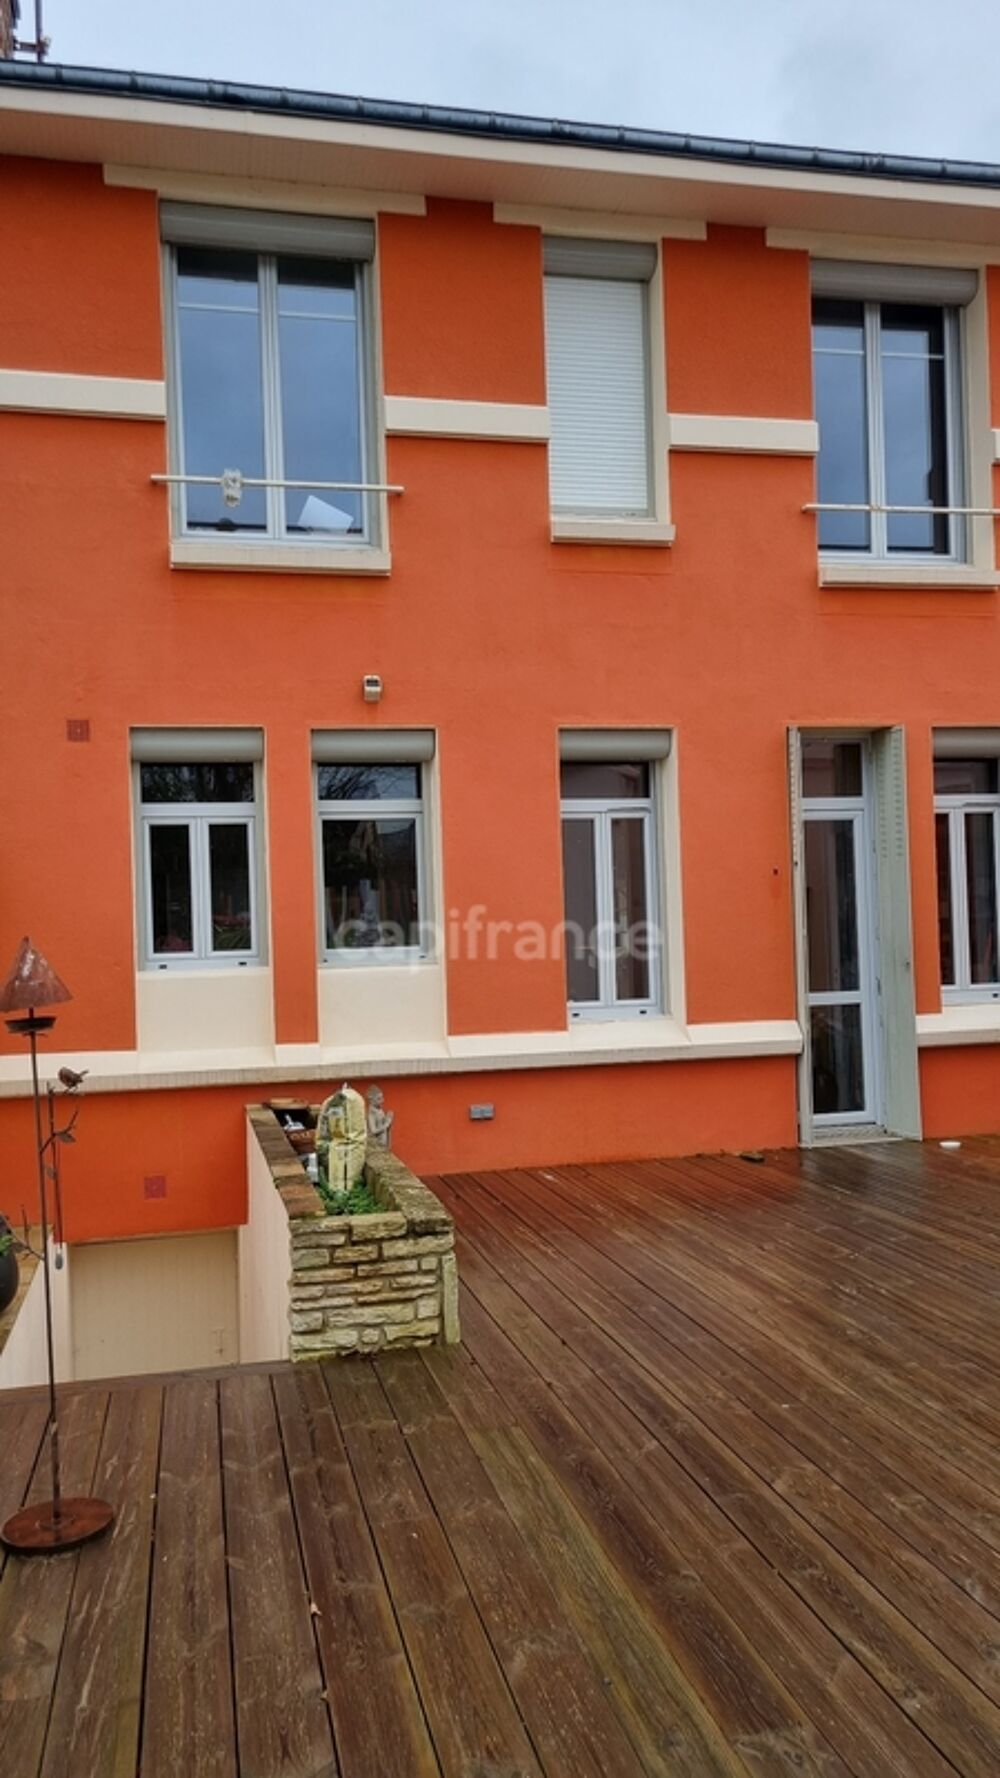 Vente Maison Dpt Sarthe (72),  vendre CONNERRE - MAISON DE VILLE 4 CHAMBRES - SH 168m2 - TERRAIN 630 m2 Connerre